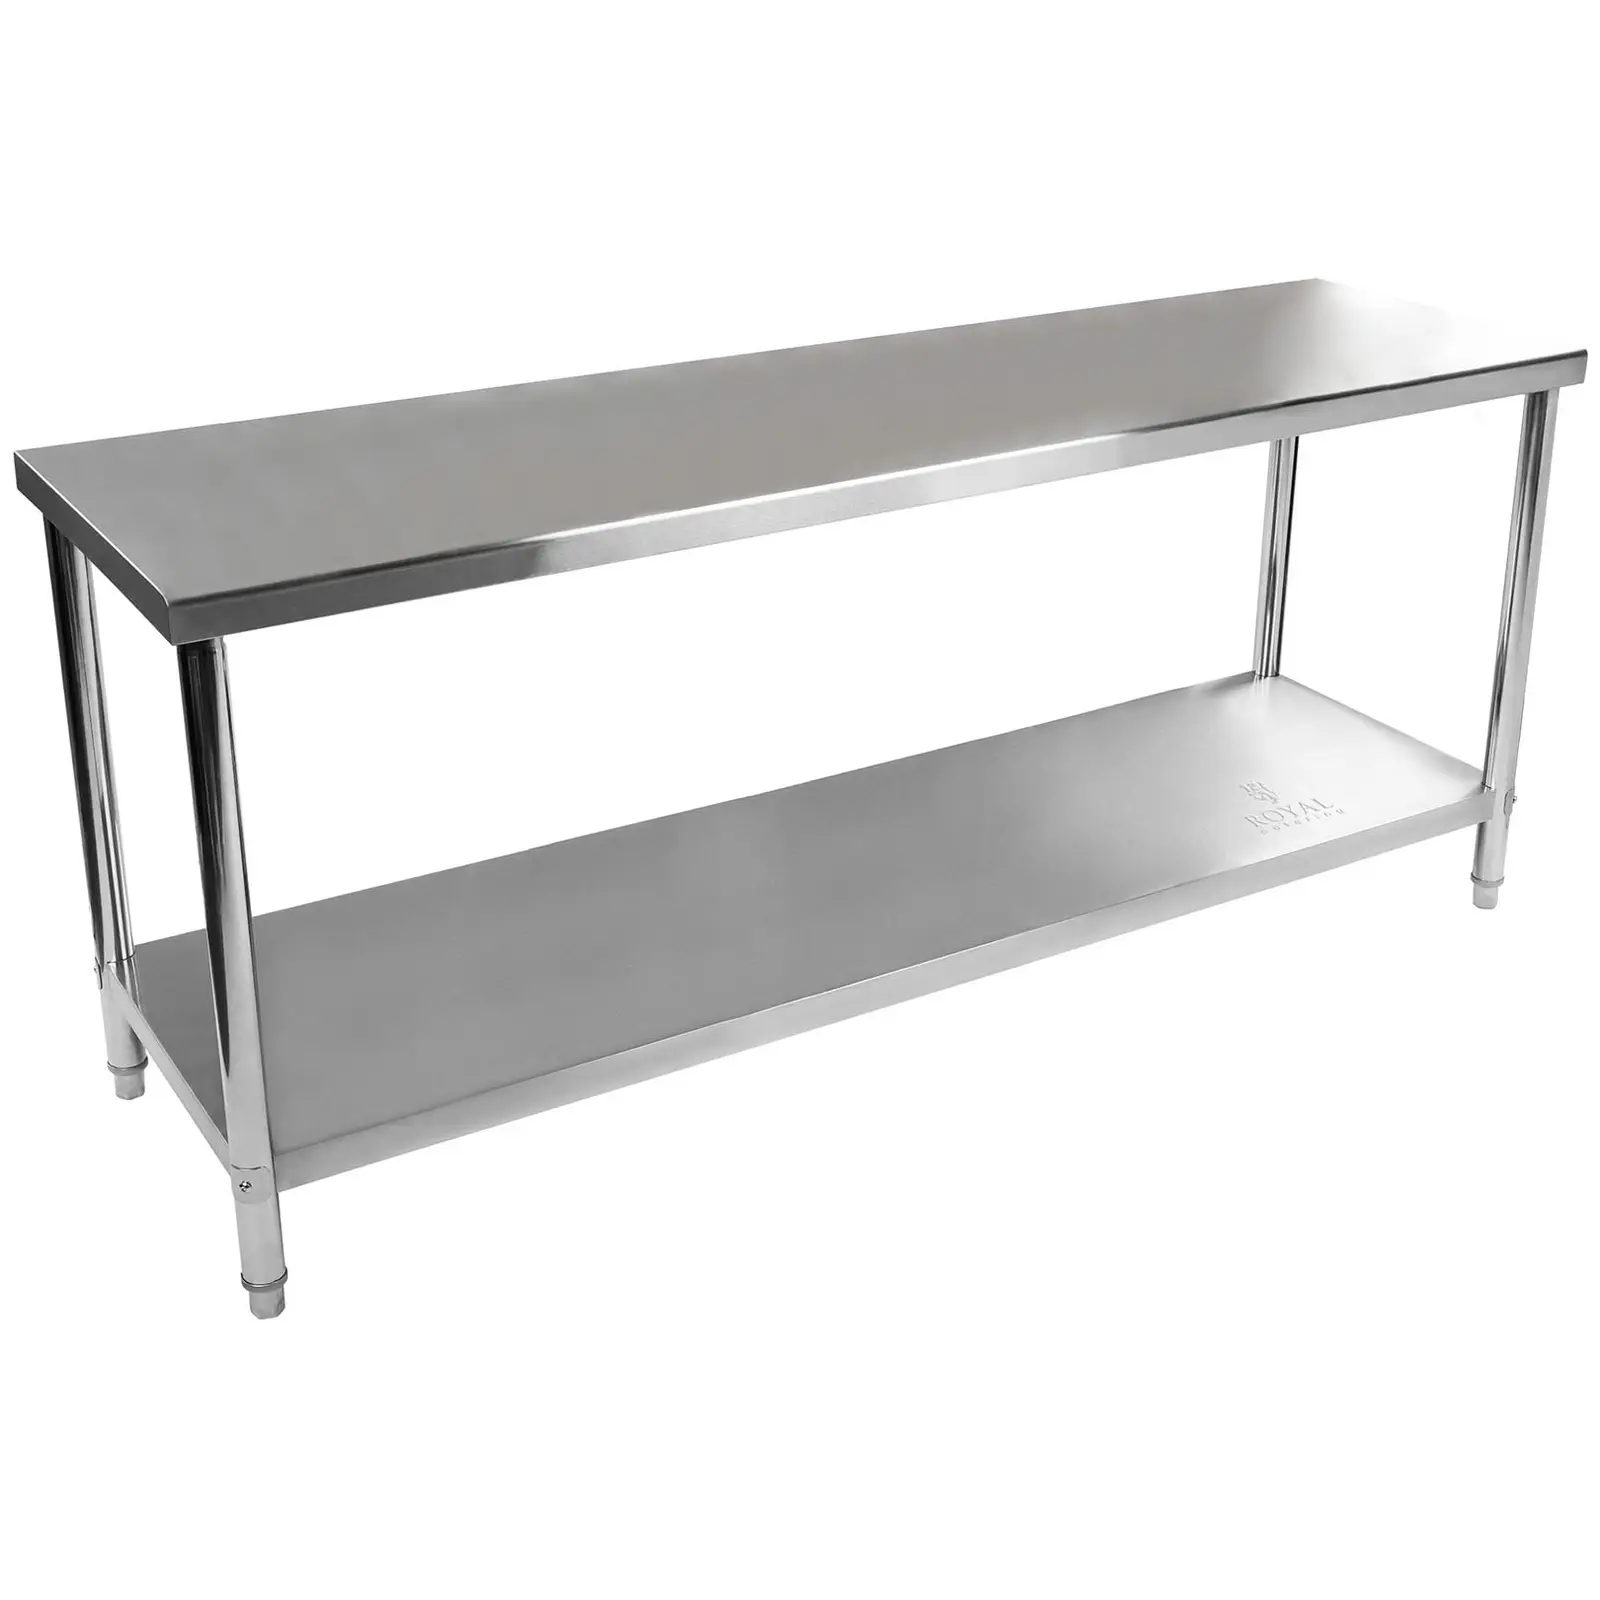 Pracovný stôl z ušľachtilej ocele - 200 x 60 cm - 160 kg nosnosť